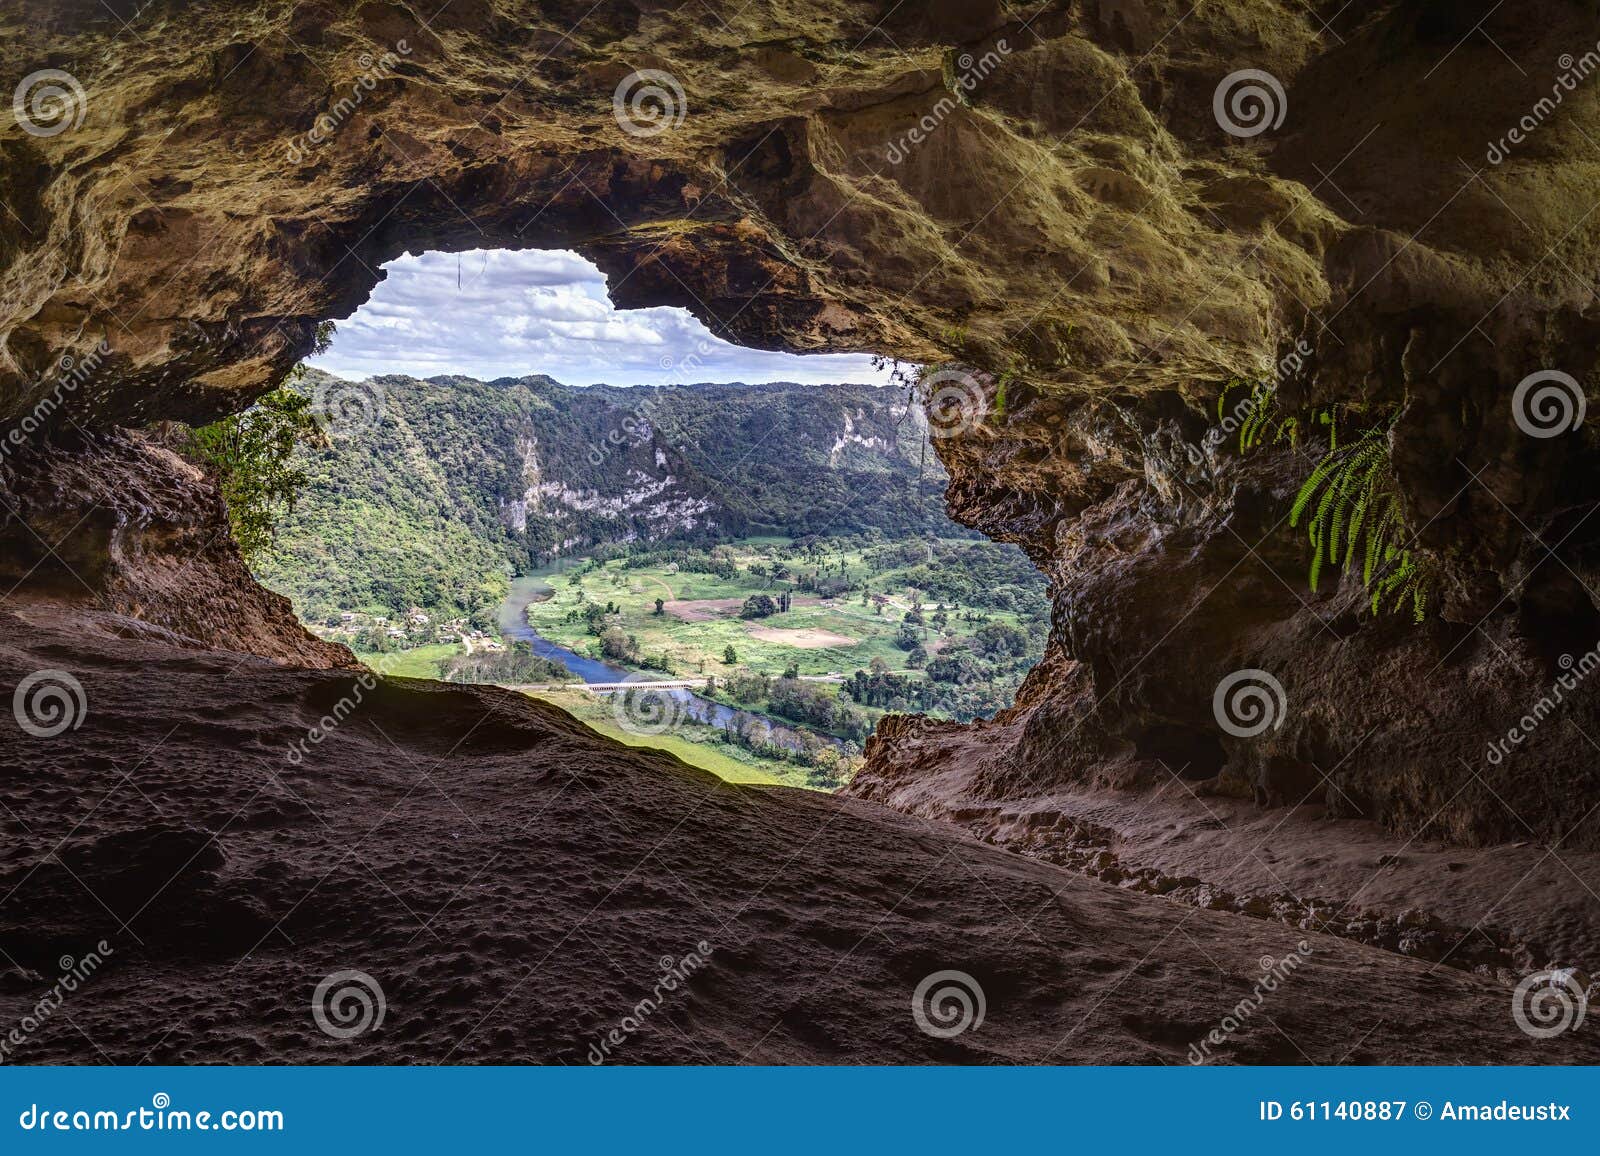 cueva ventana - window cave in puerto rico